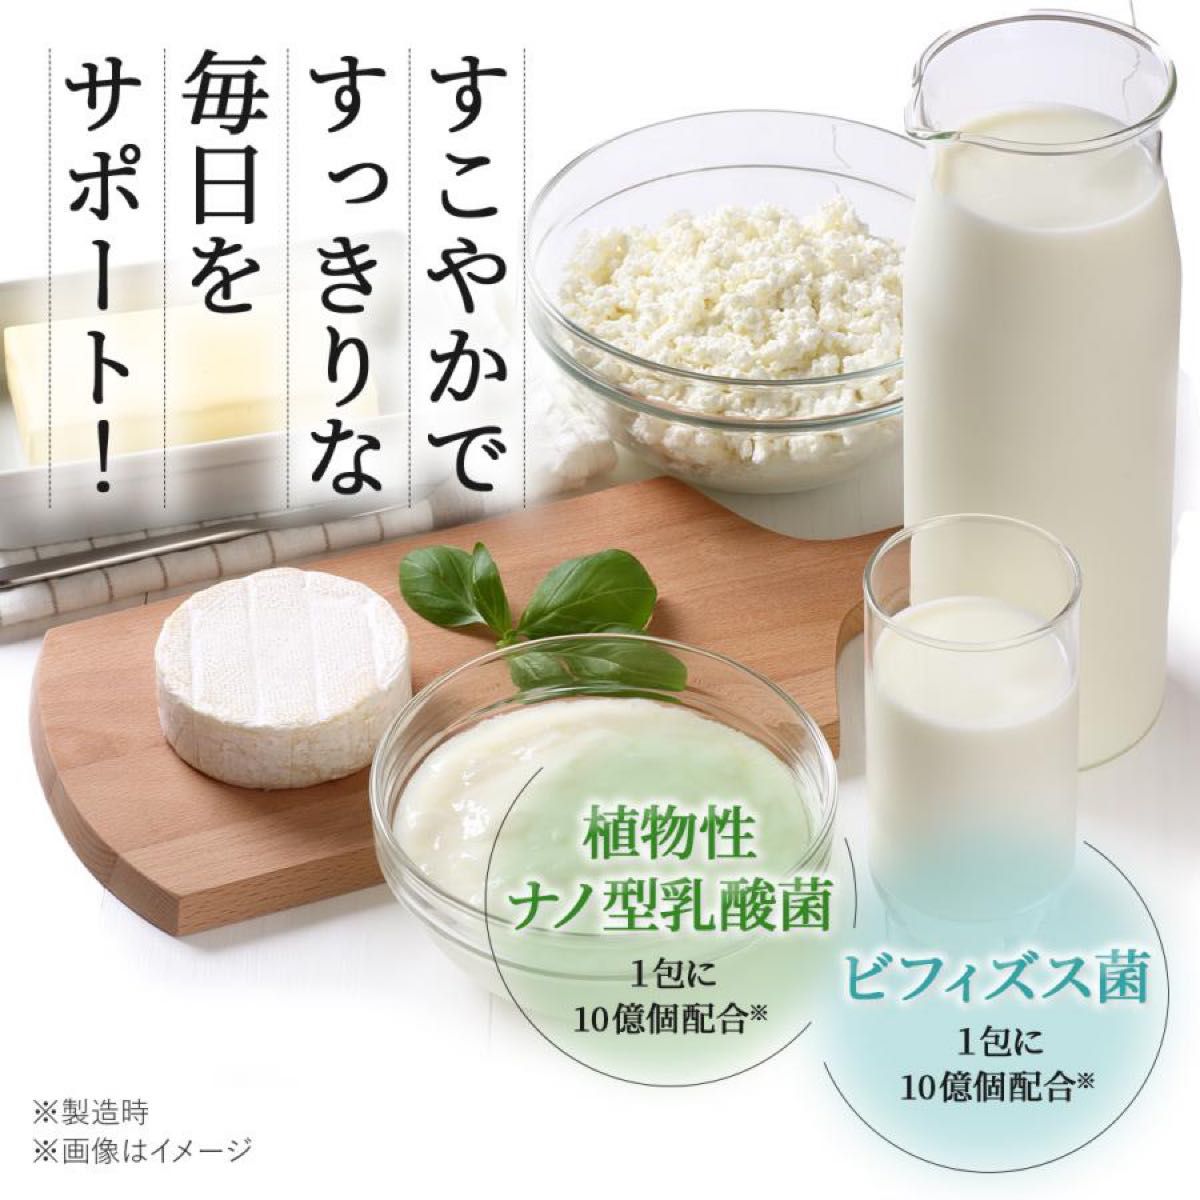 【新品未開封】 Ｗの健康青汁 新日本製薬 機能性表示食品 青汁 2箱 正規品  体脂肪 中性脂肪 エラグ酸 GABA 乳酸菌